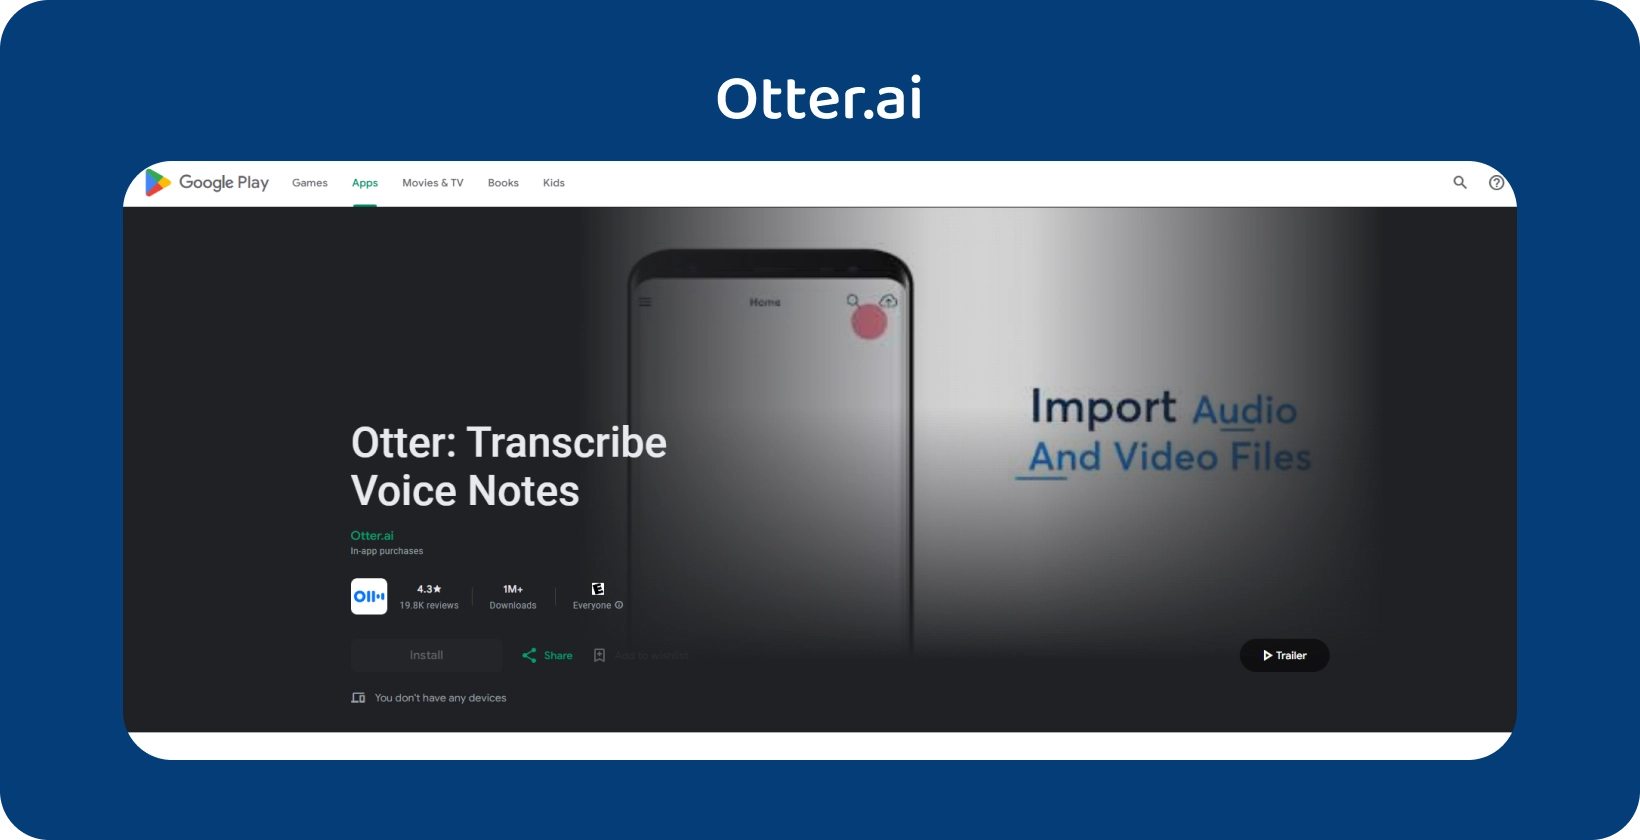 Приложение Otter.ai в Google Play с возможностью транскрибирования голосовых заметок и импорта аудио/видео файлов.